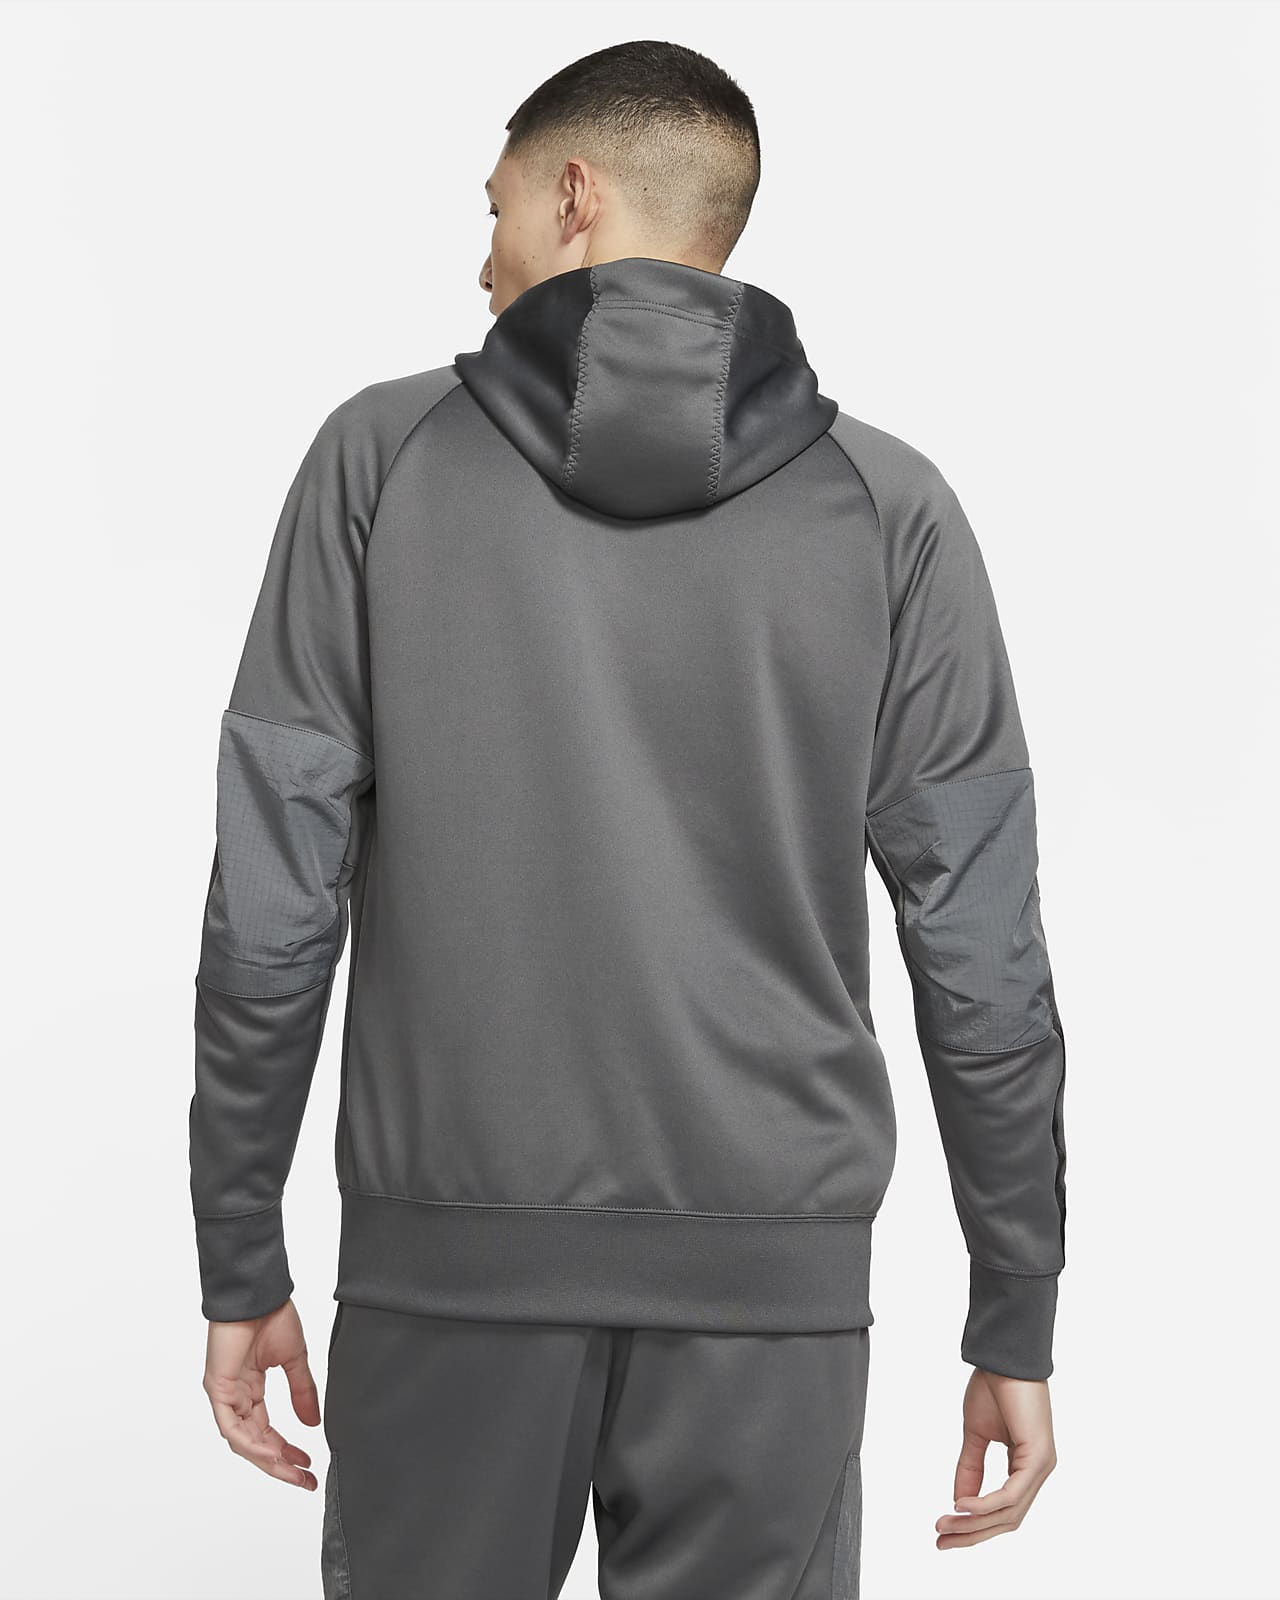 nike air max hoodie grey